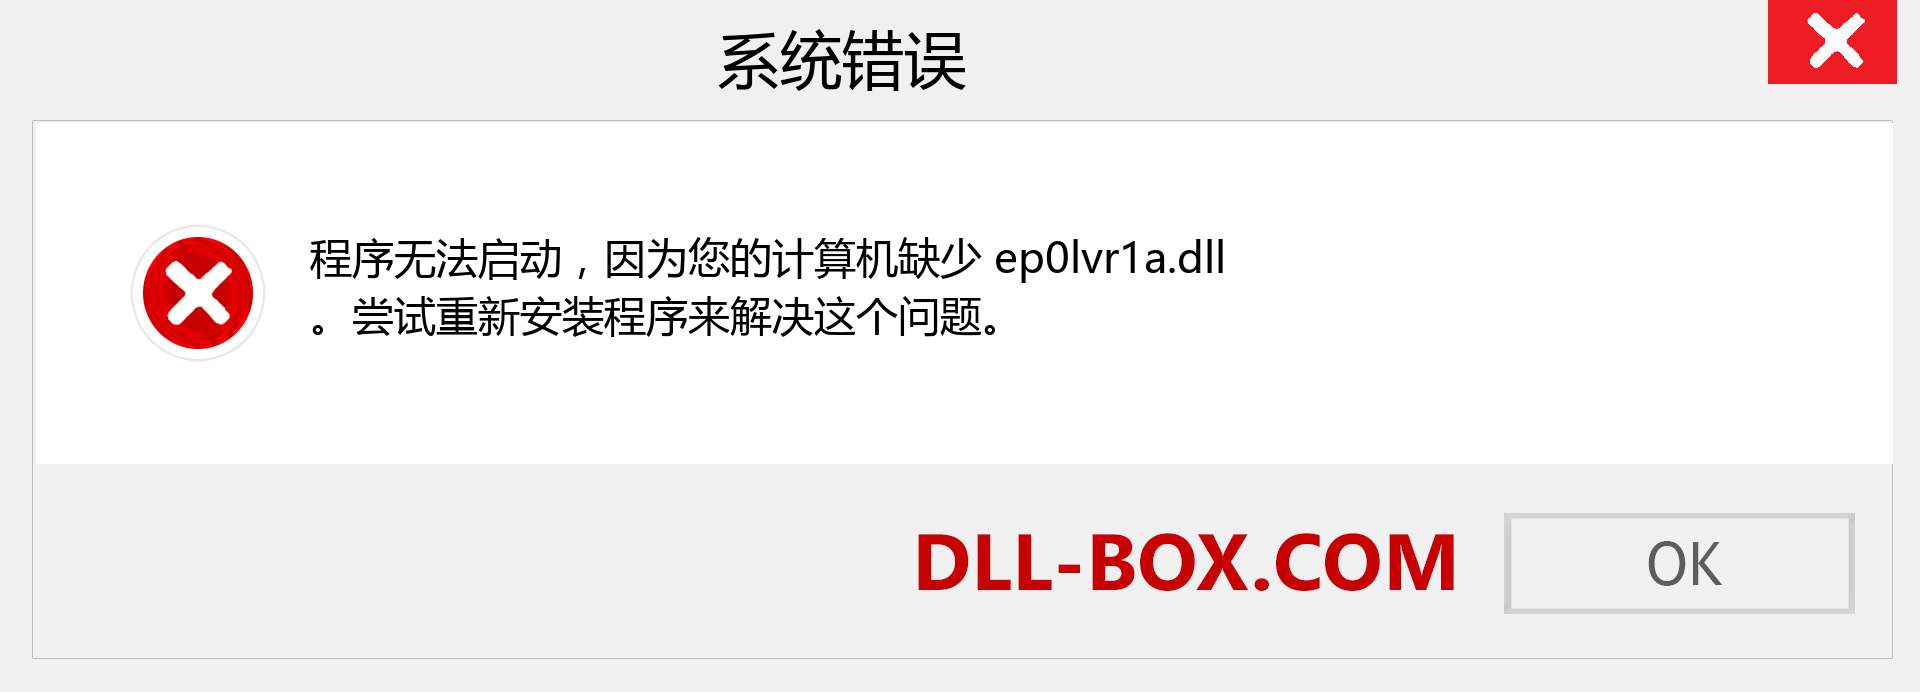 ep0lvr1a.dll 文件丢失？。 适用于 Windows 7、8、10 的下载 - 修复 Windows、照片、图像上的 ep0lvr1a dll 丢失错误